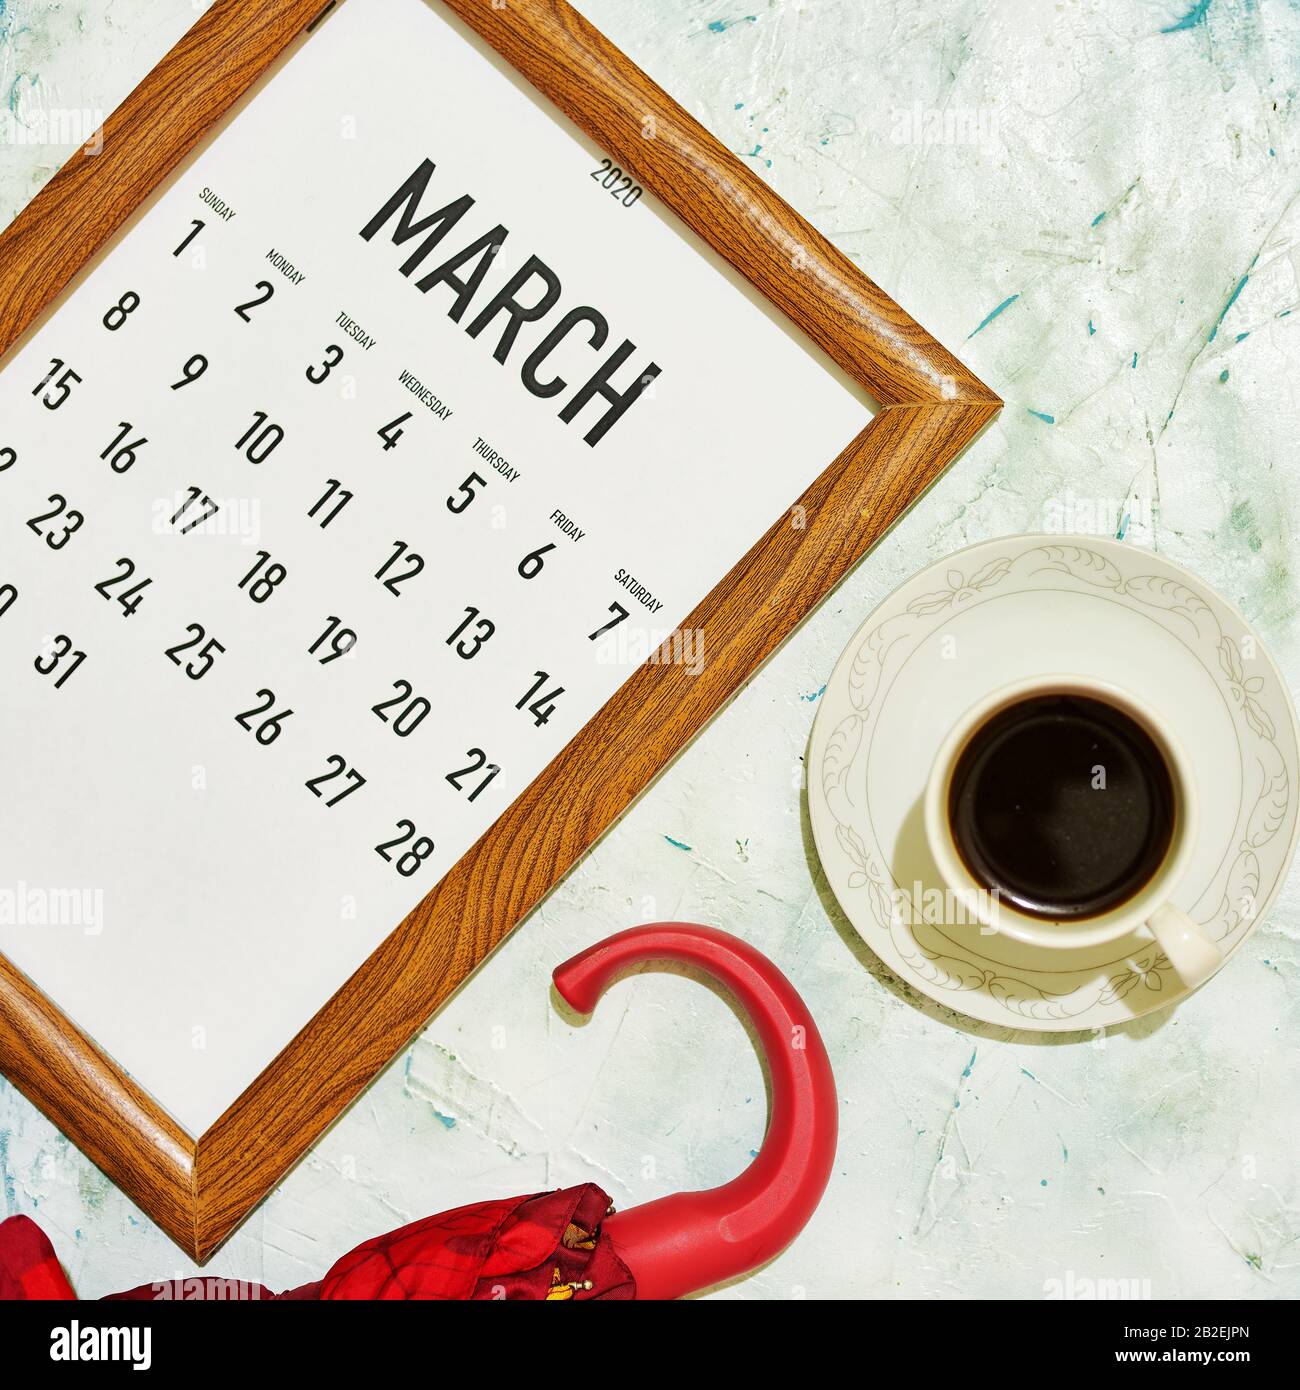 Ver desde arriba hasta el calendario mensual de marzo Foto de stock